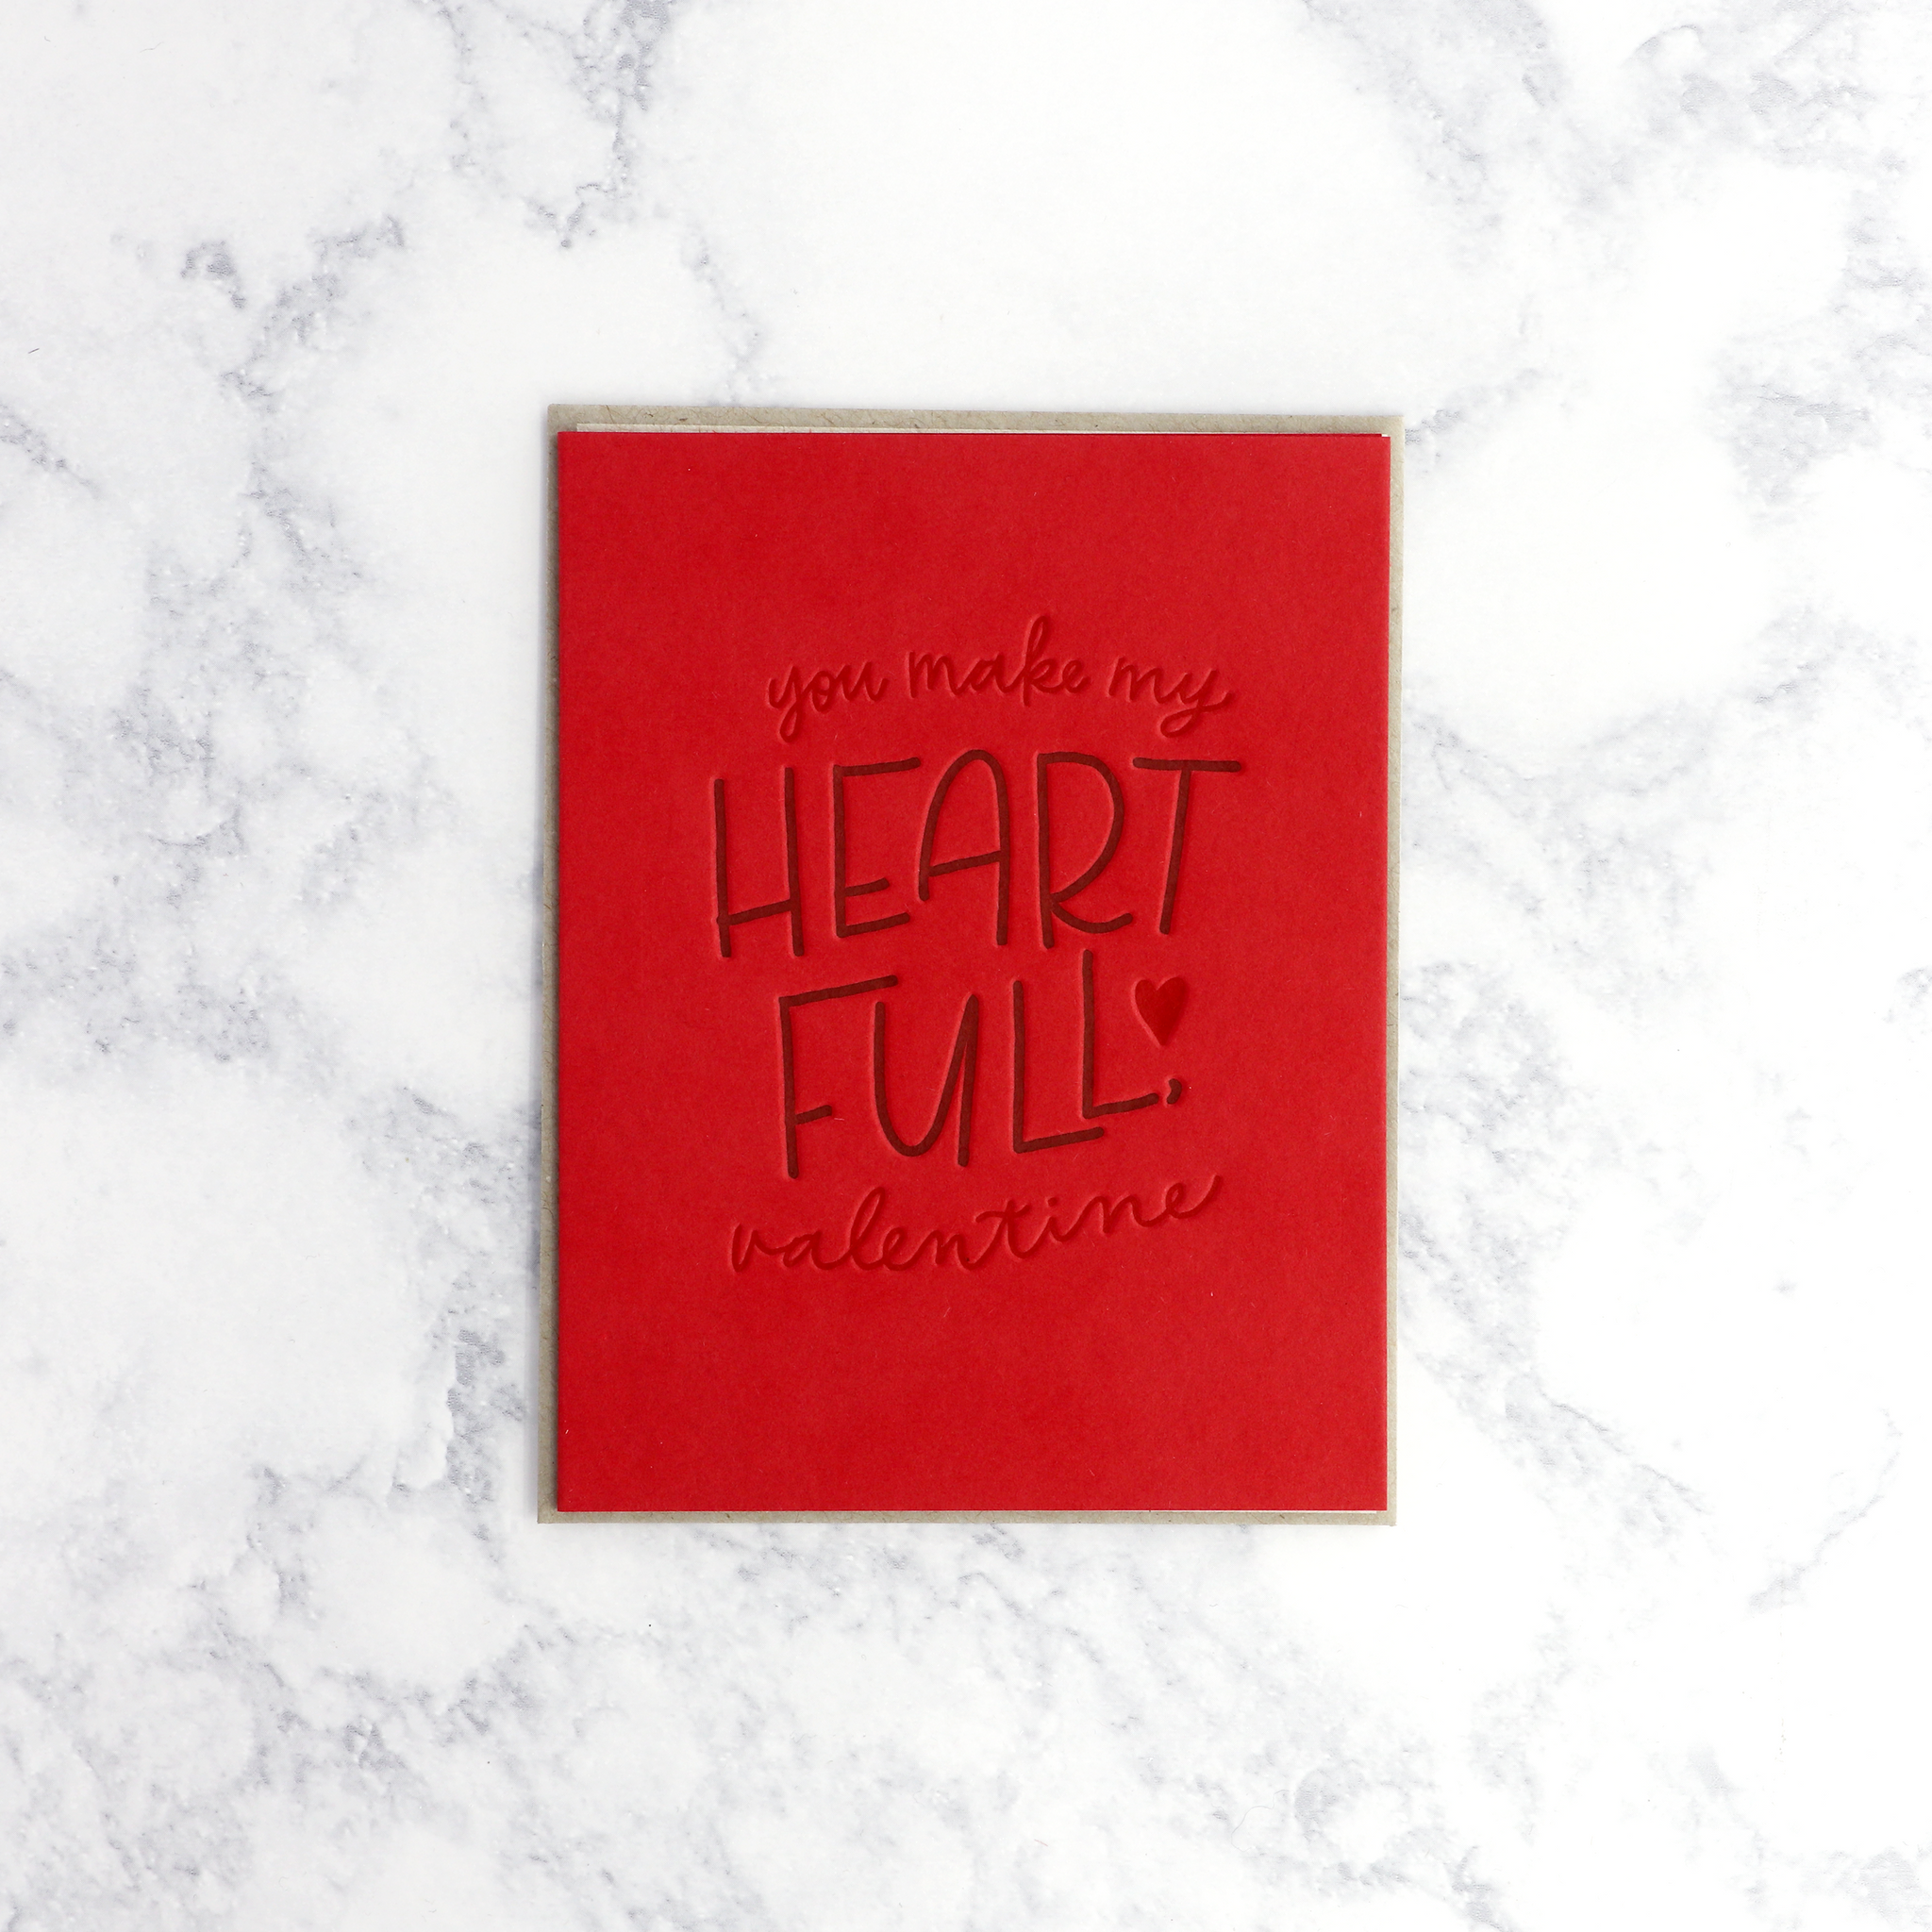 Letterpress "Heart Full" Valentine's Day Card